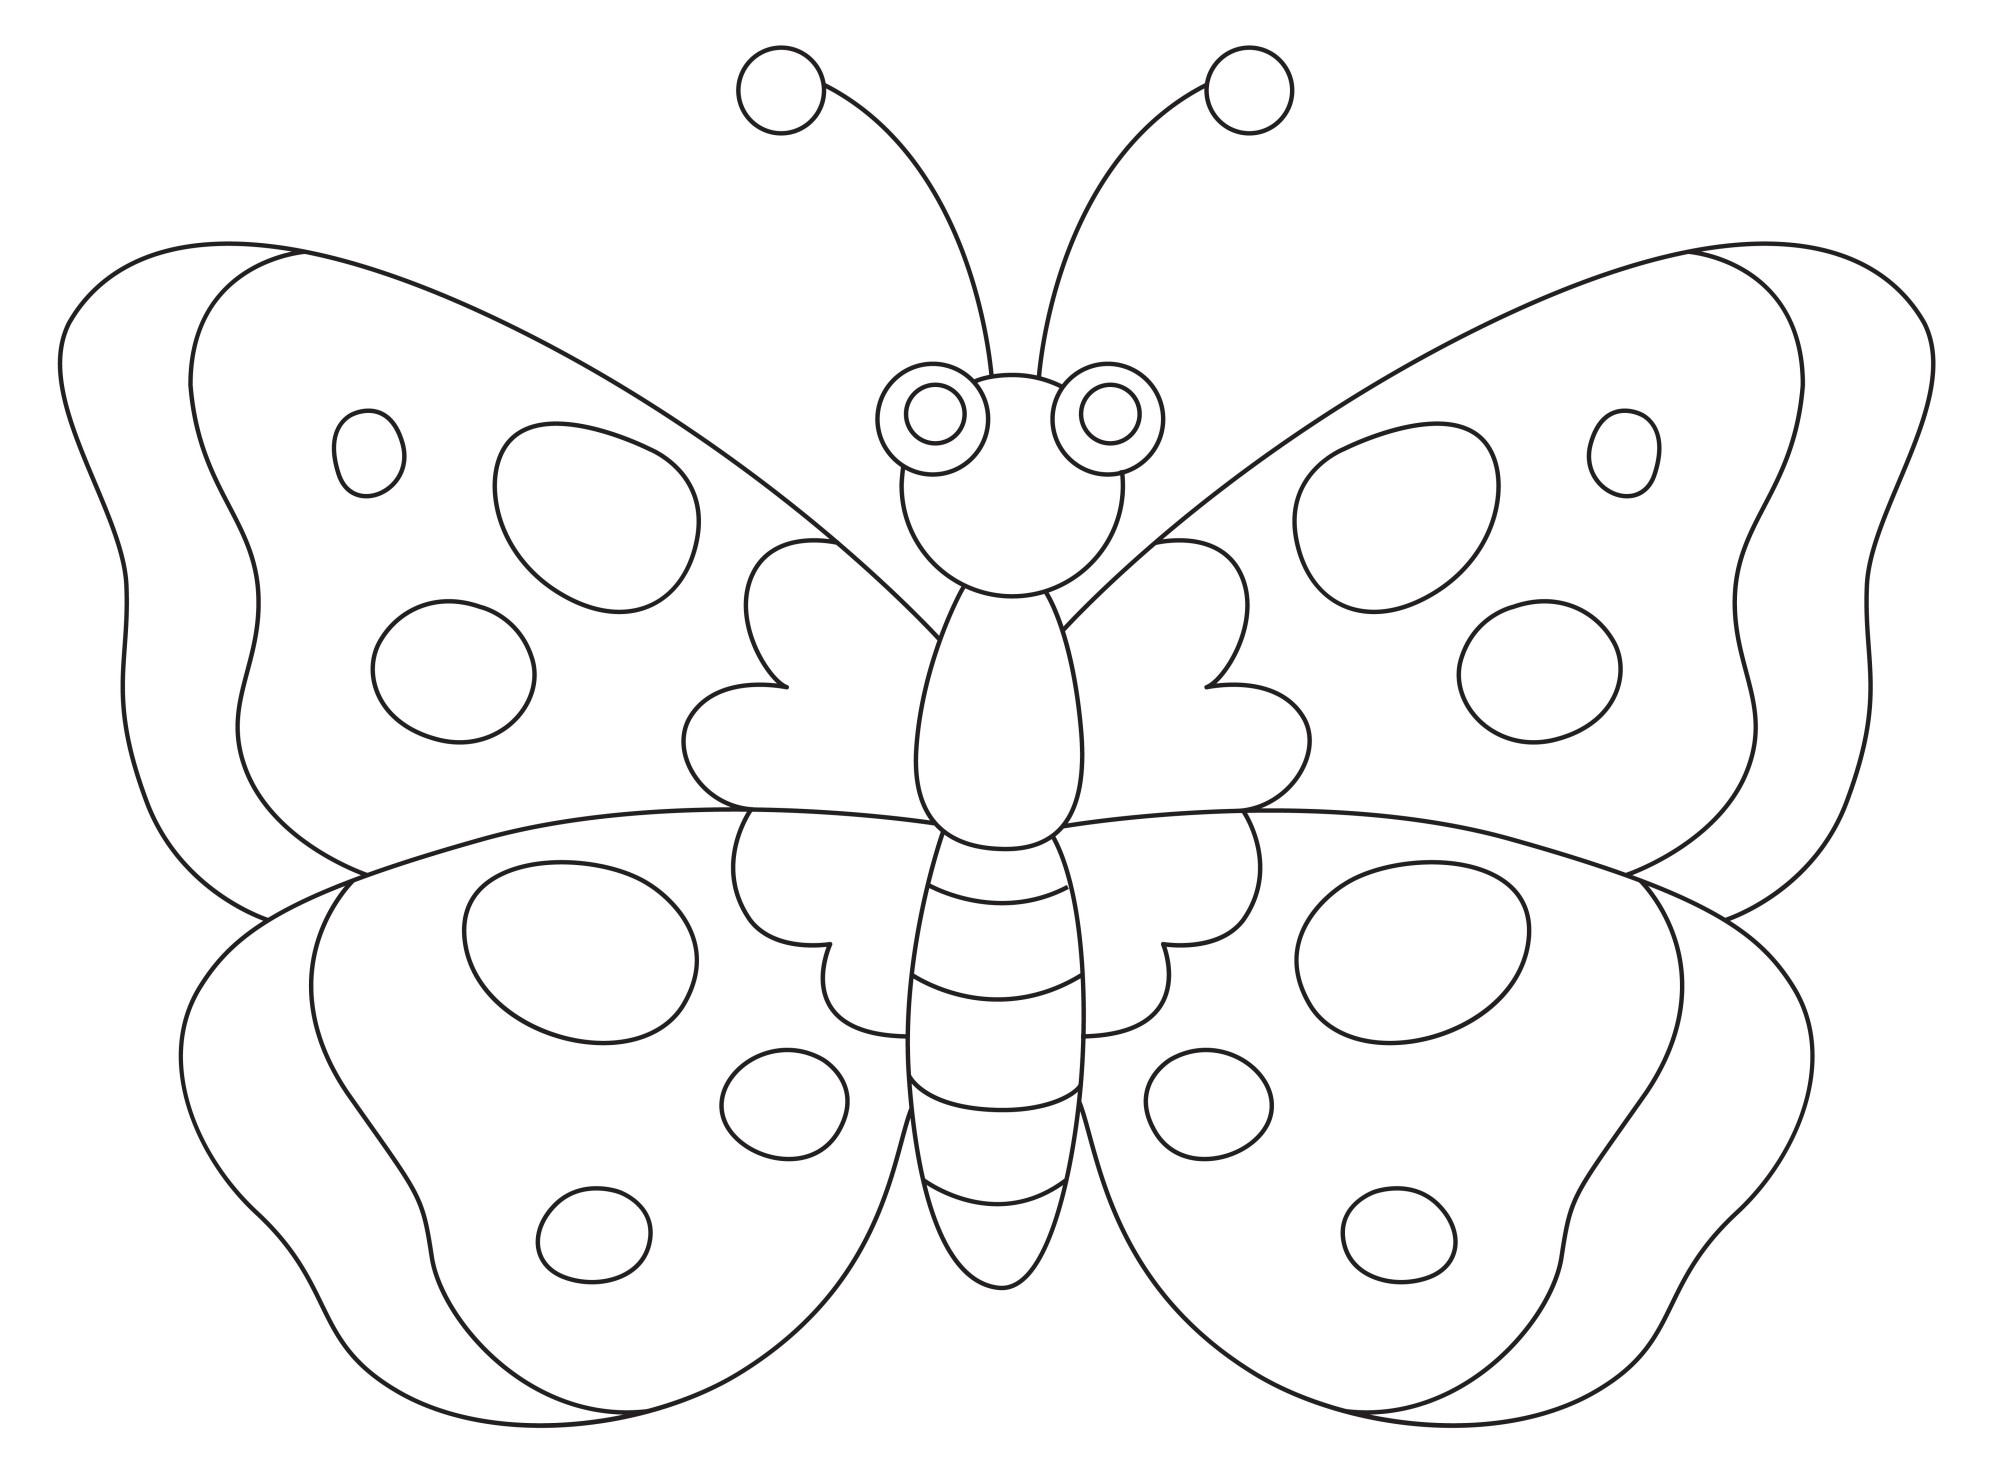 Раскраска для детей: бабочка аполлон